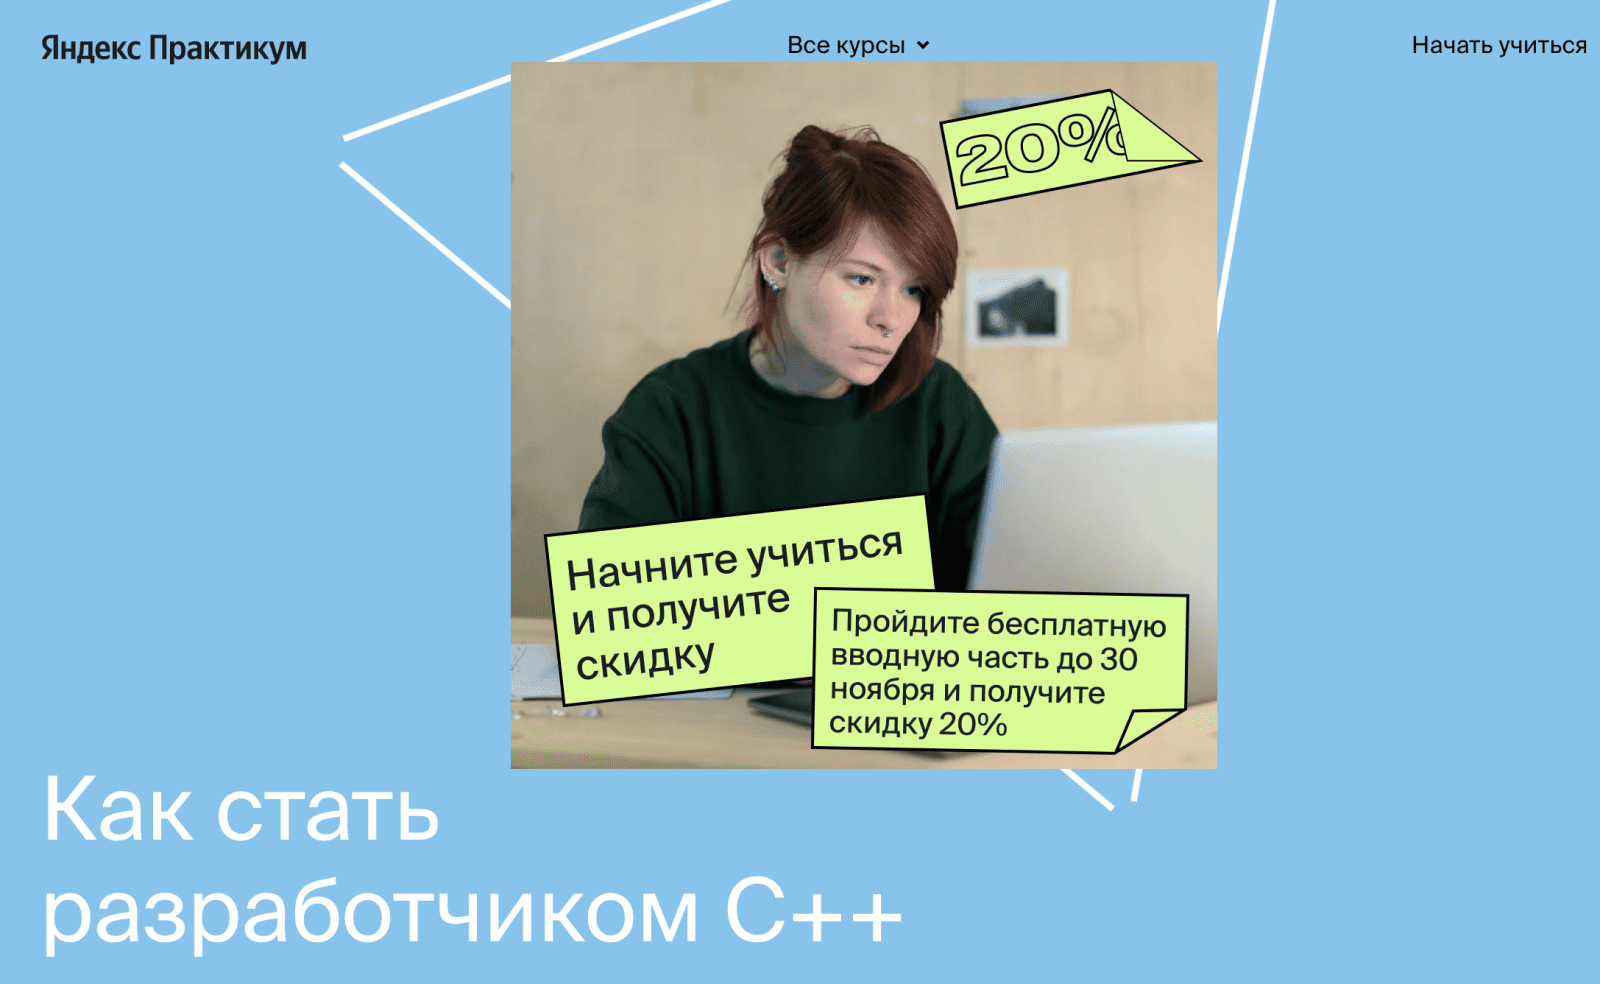 Изображение [Яндекс.Практикум] Разработчик C++ [Часть 1 из 9] (2021) в посте 245809